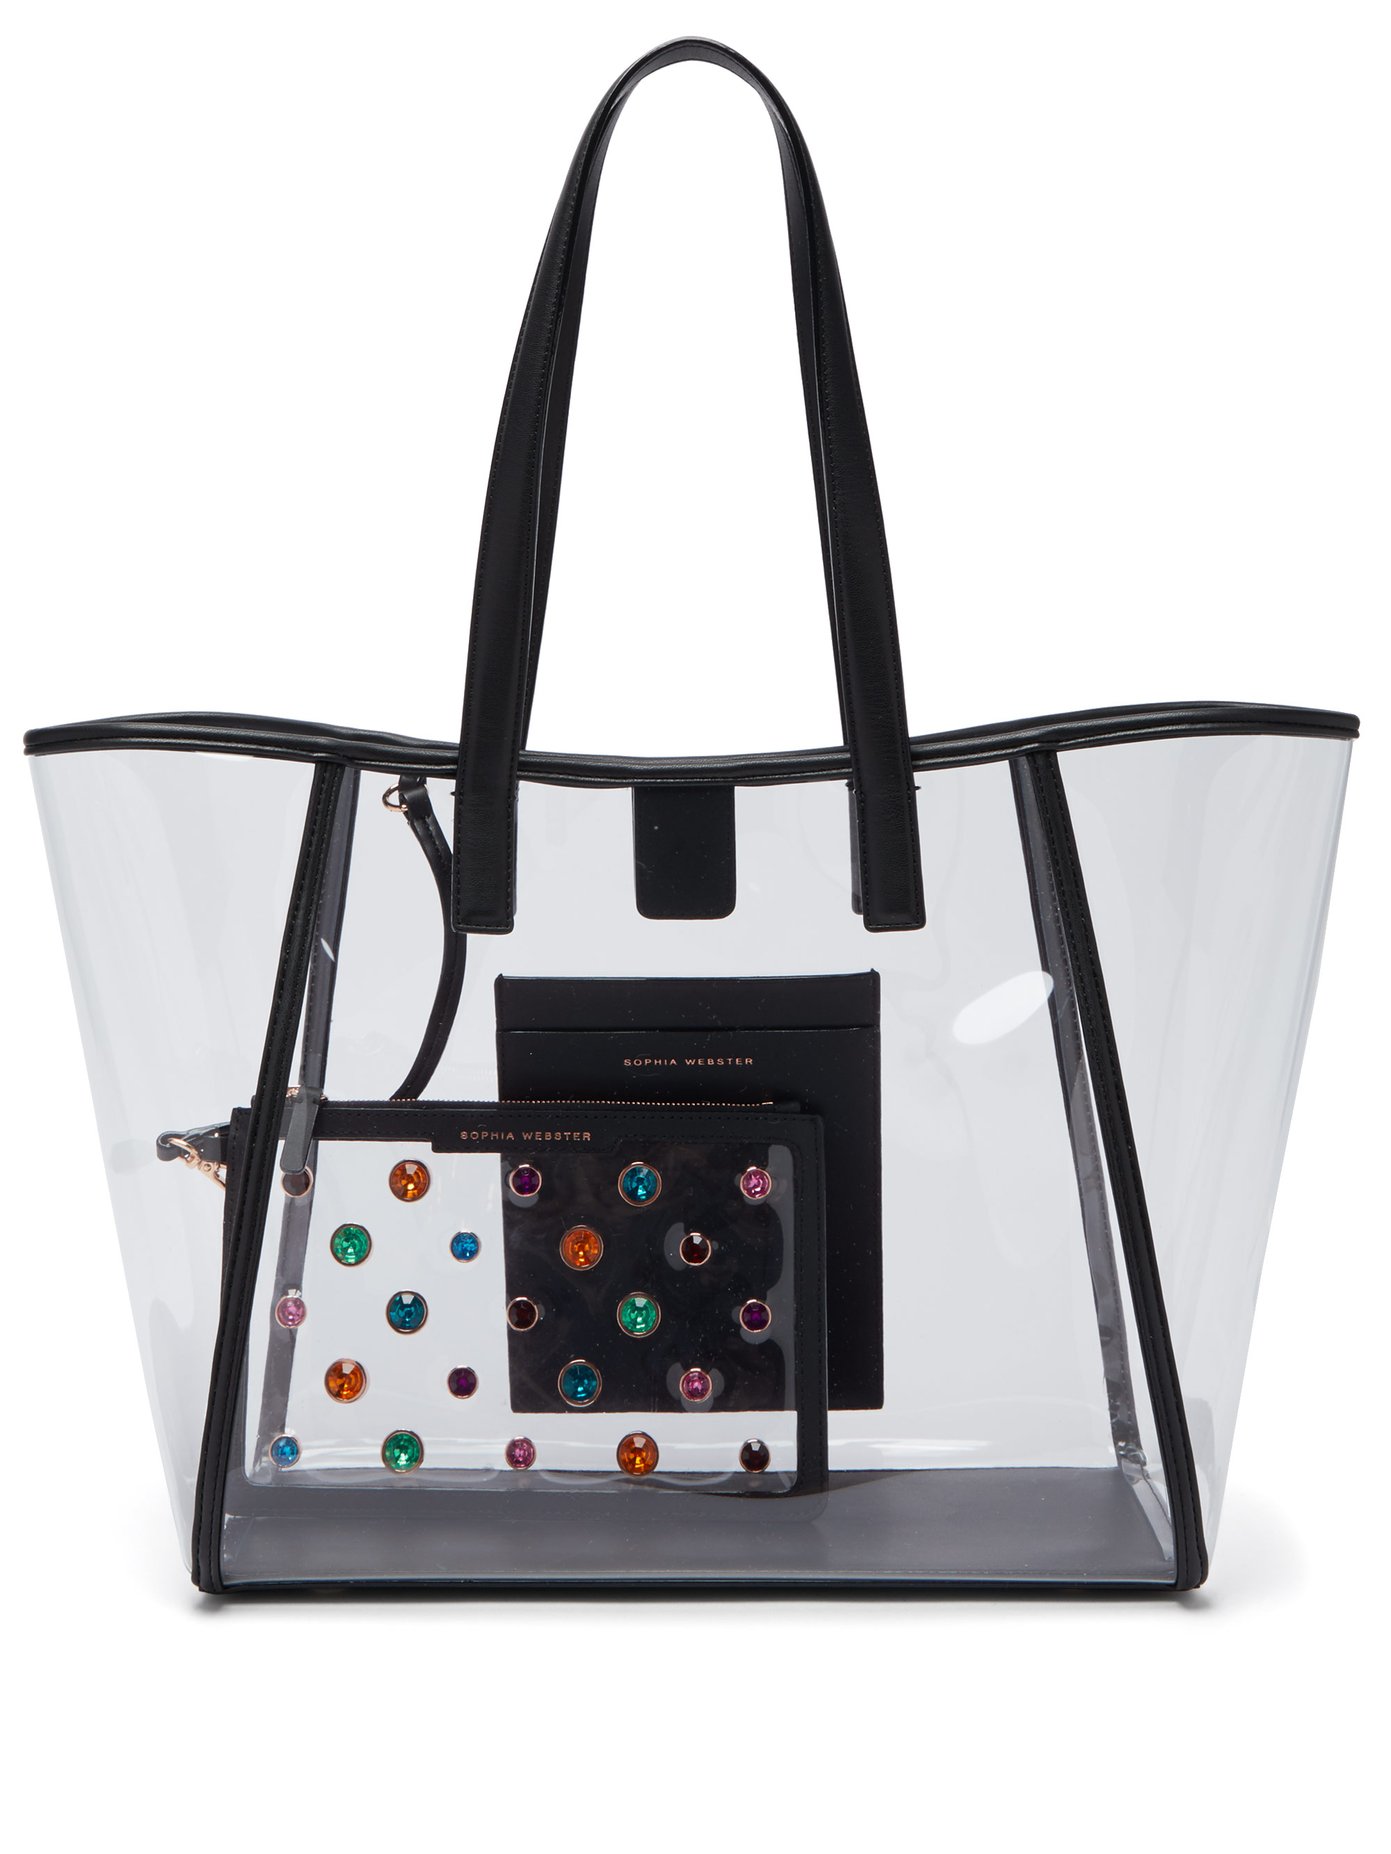 sophia webster handbags sale